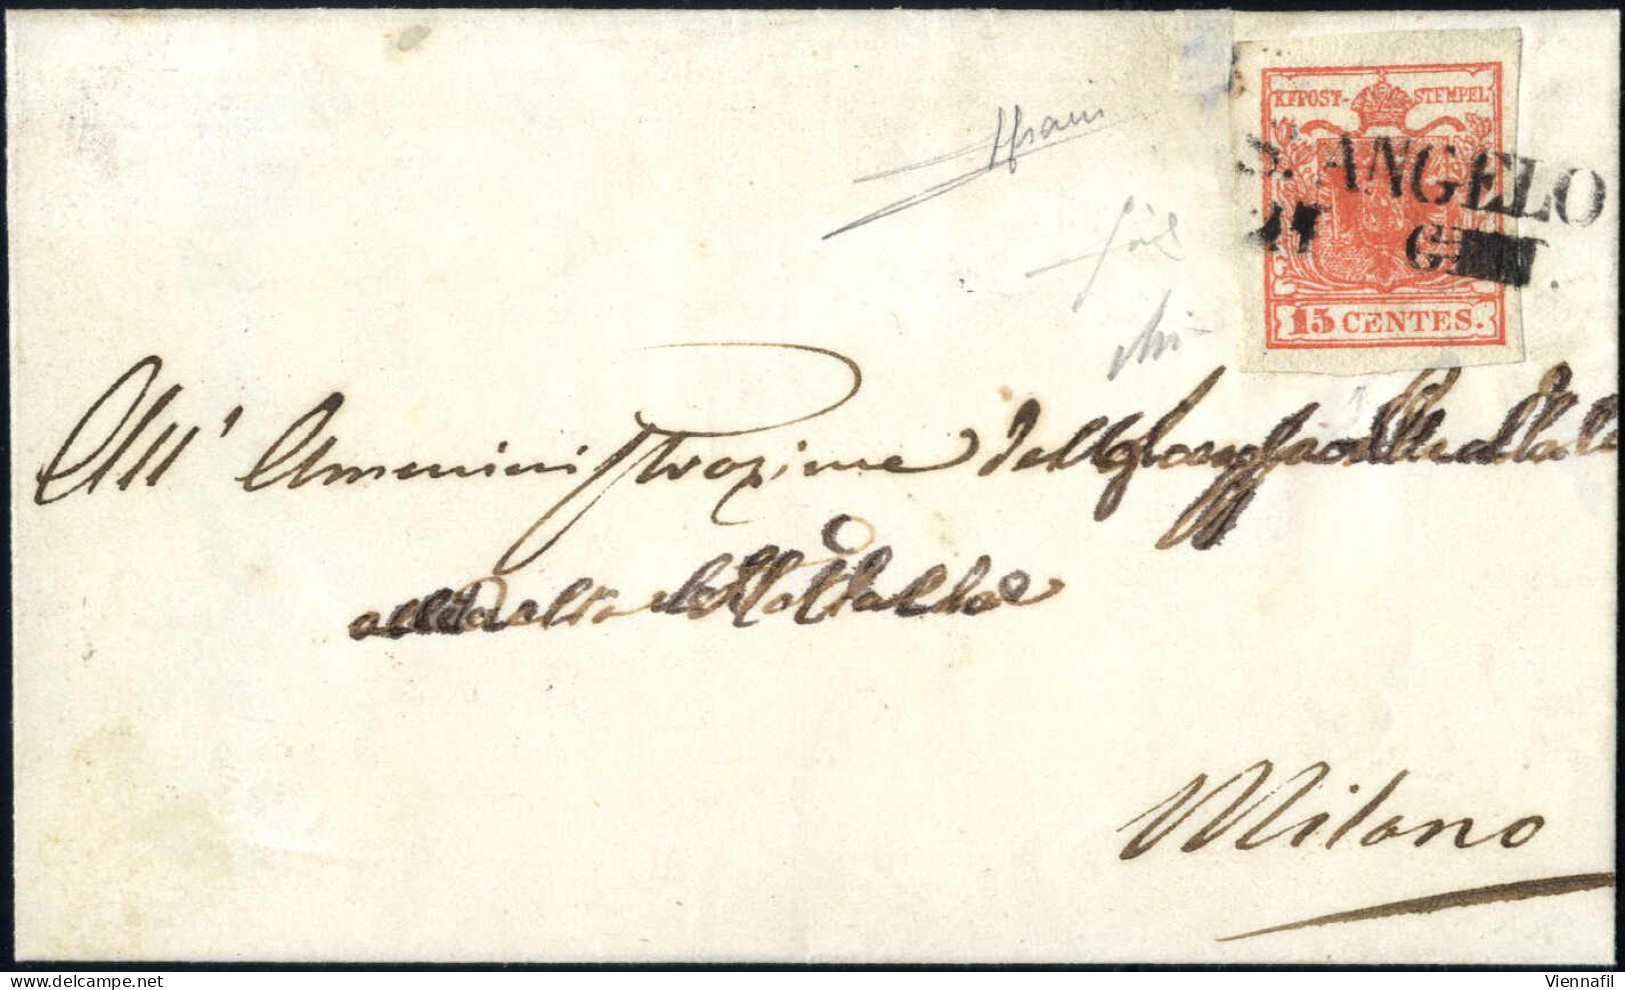 Cover St. Angelo, SD Punti 13, Lettera Del 12.10.1850 Per Padova Affrancata Con 15 C. Rosso Vermiglio I Tipo Carta A Man - Lombardo-Venetien